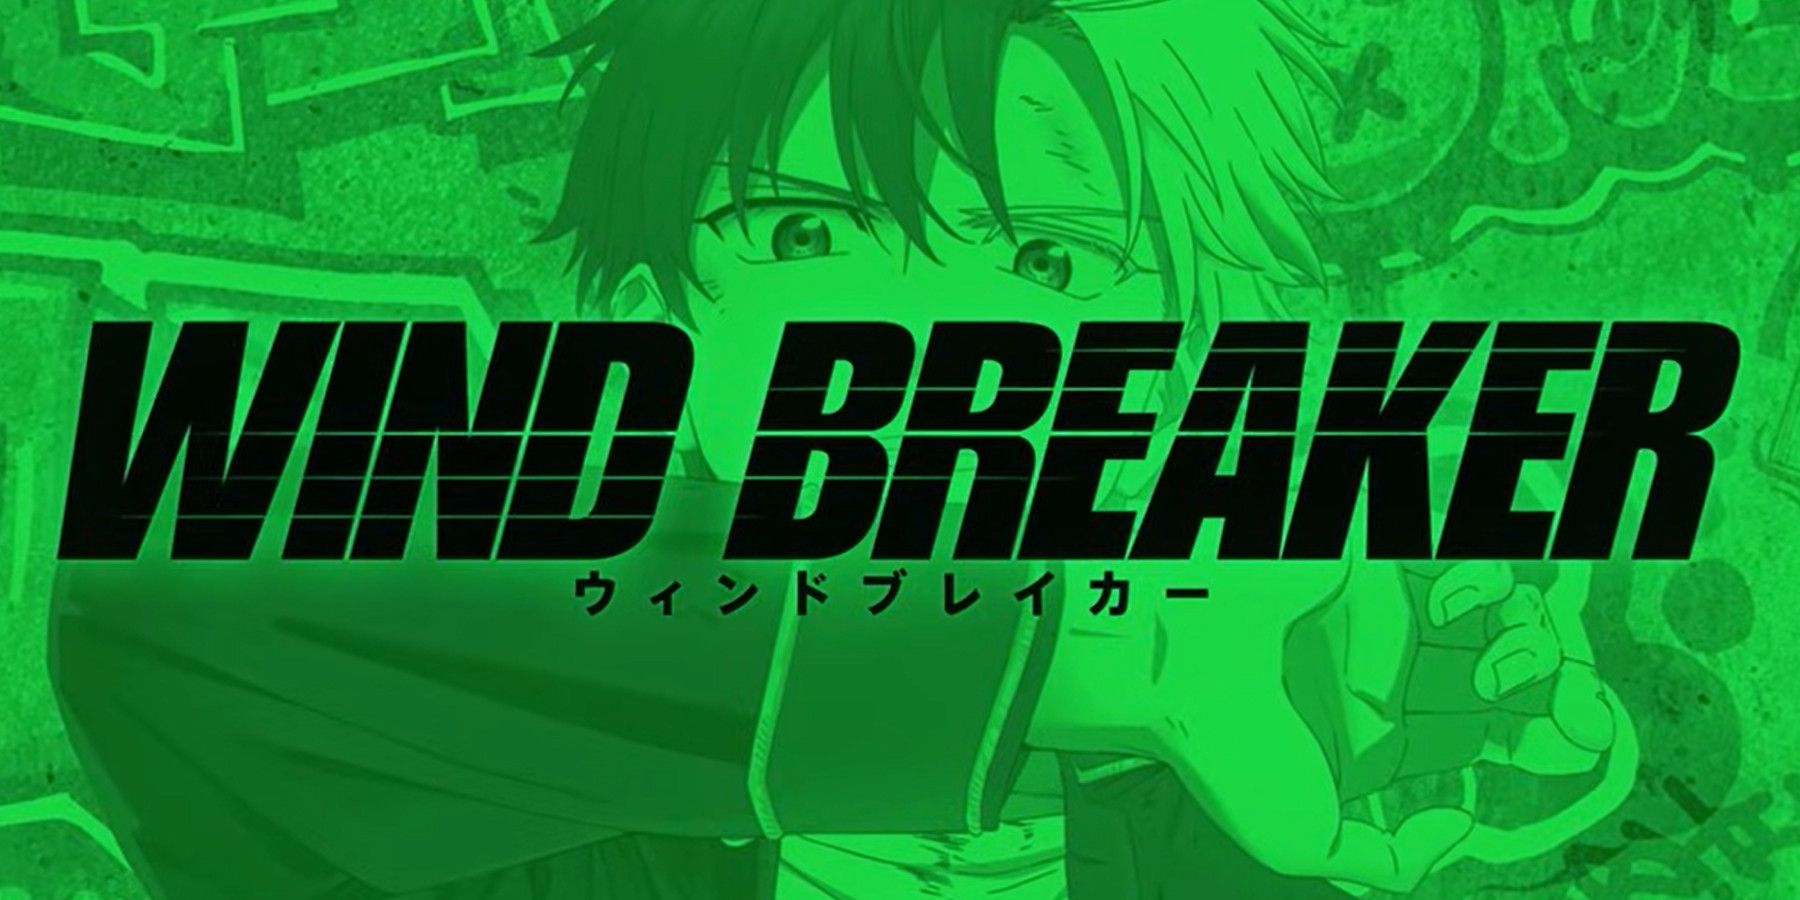 WIND BREAKER (Nii Satoru) manga & anime | Facebook